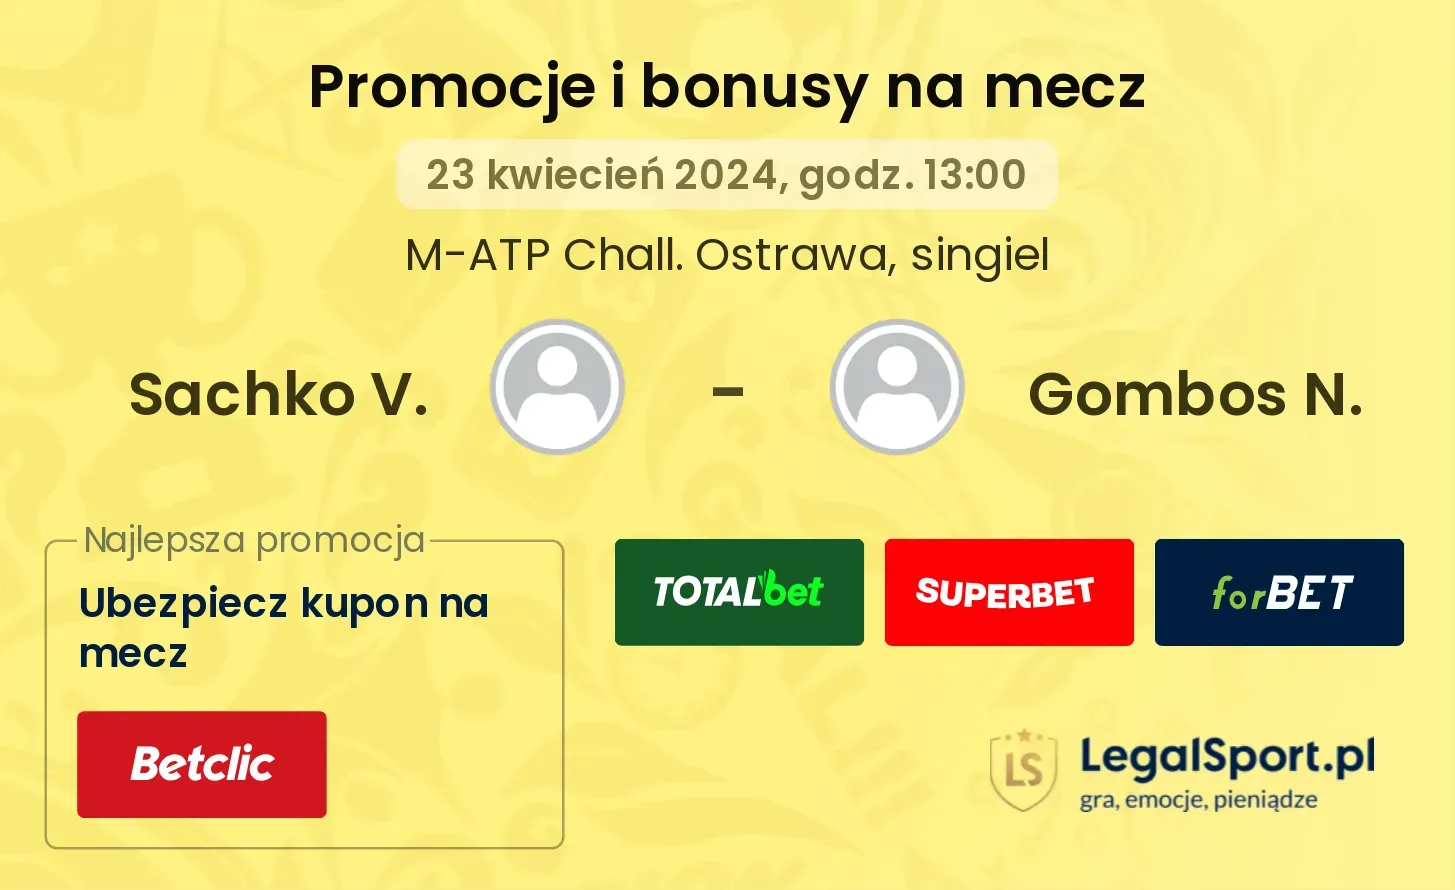 Sachko V. - Gombos N. promocje bonusy na mecz